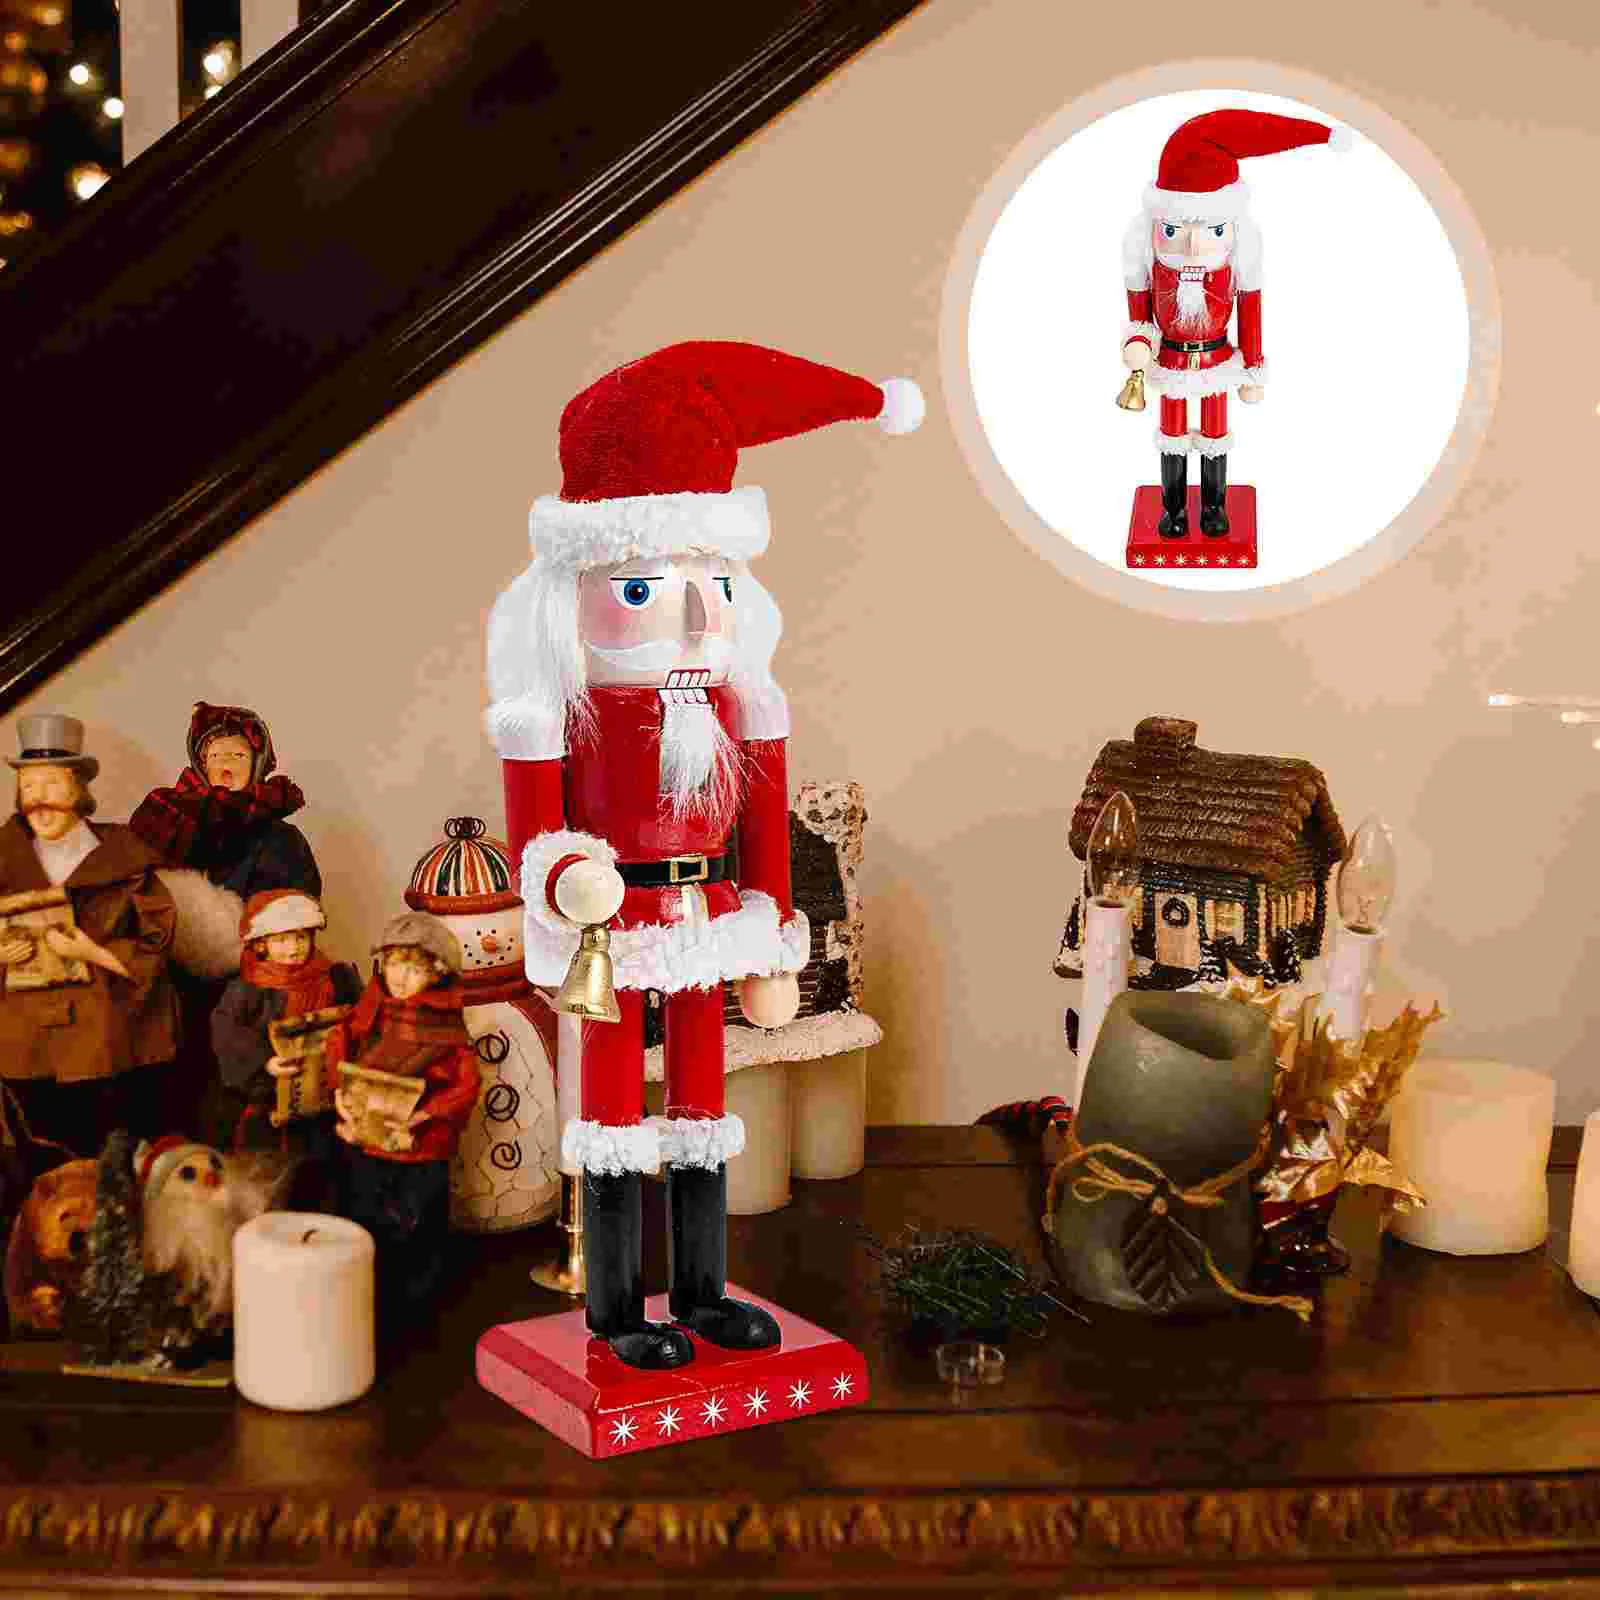 

Nutcracker Christmas Decoraciones Para Cuartos Wooden Santa Decorations Wood Soldier Crafts Decor Claus Xmas Figures Nutcrackers